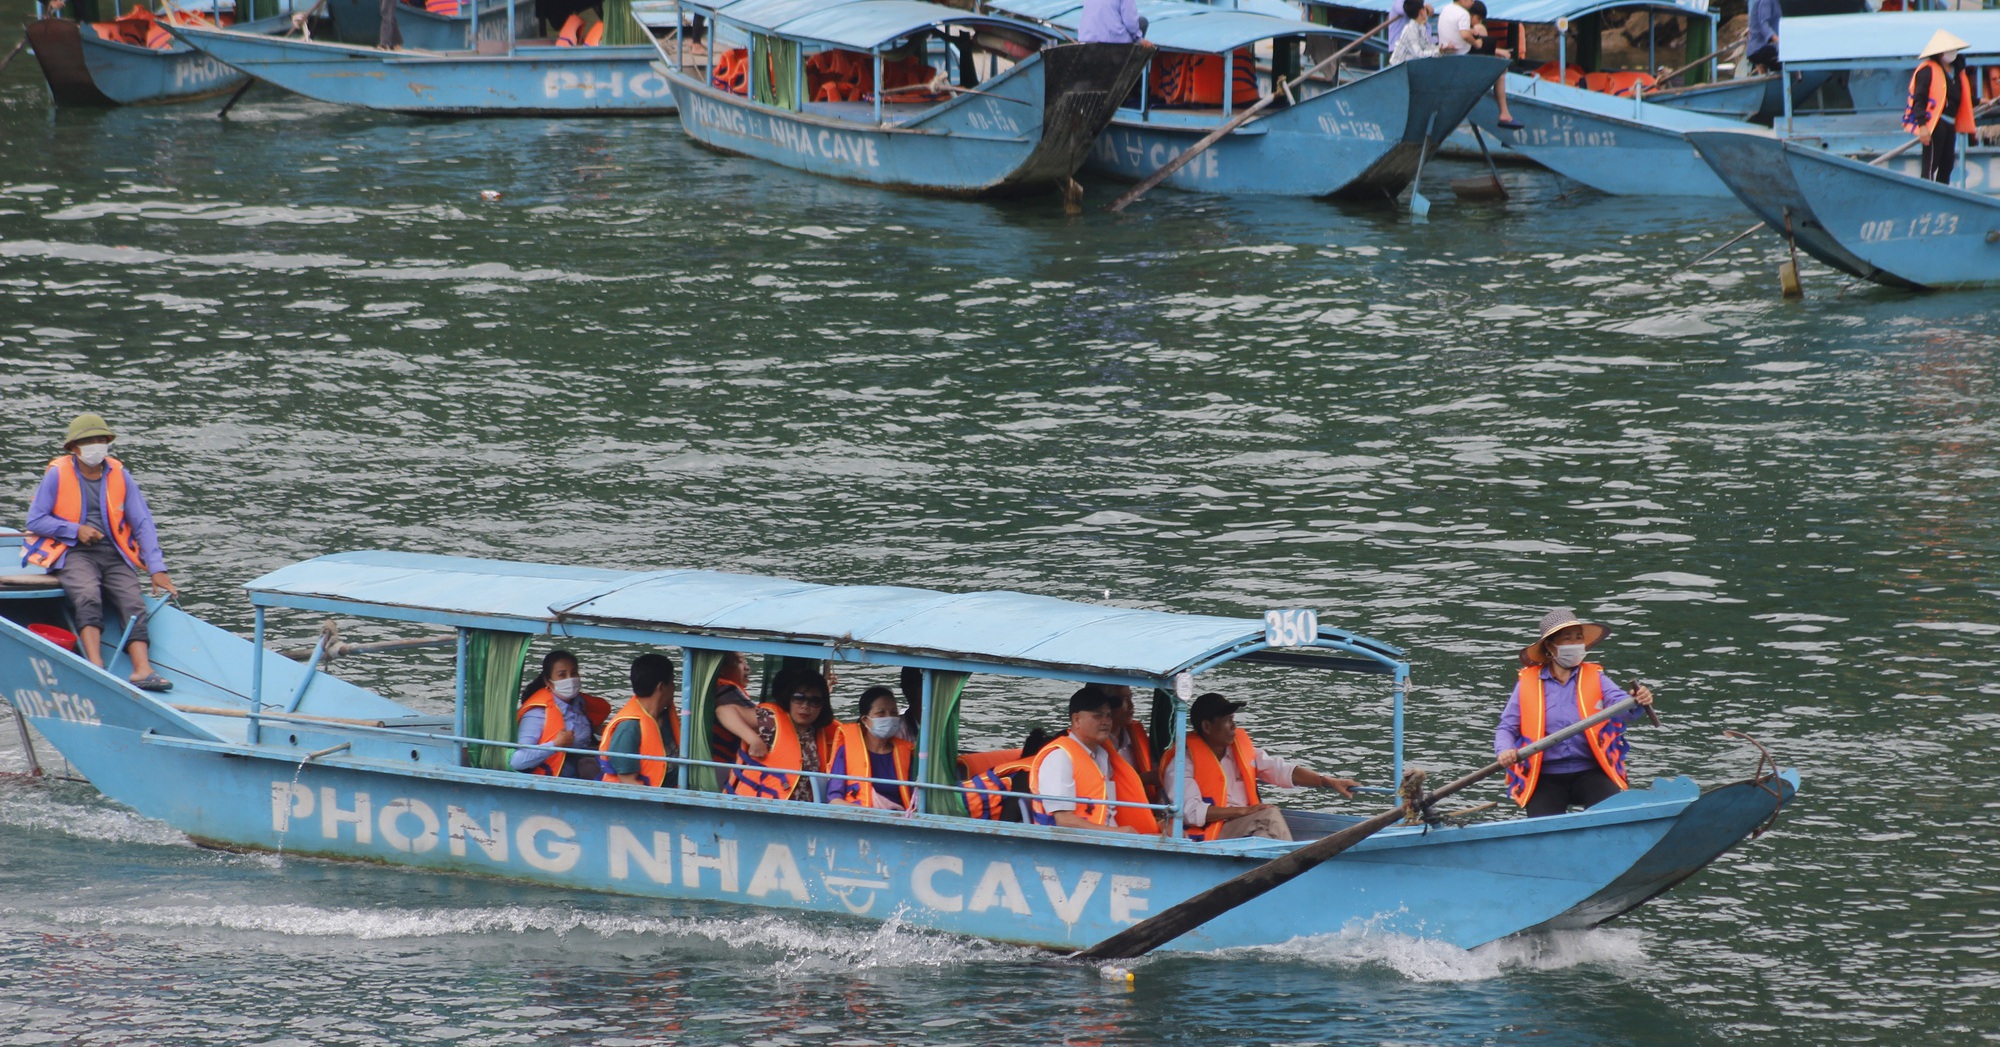 Tourists flock to Phong Nha